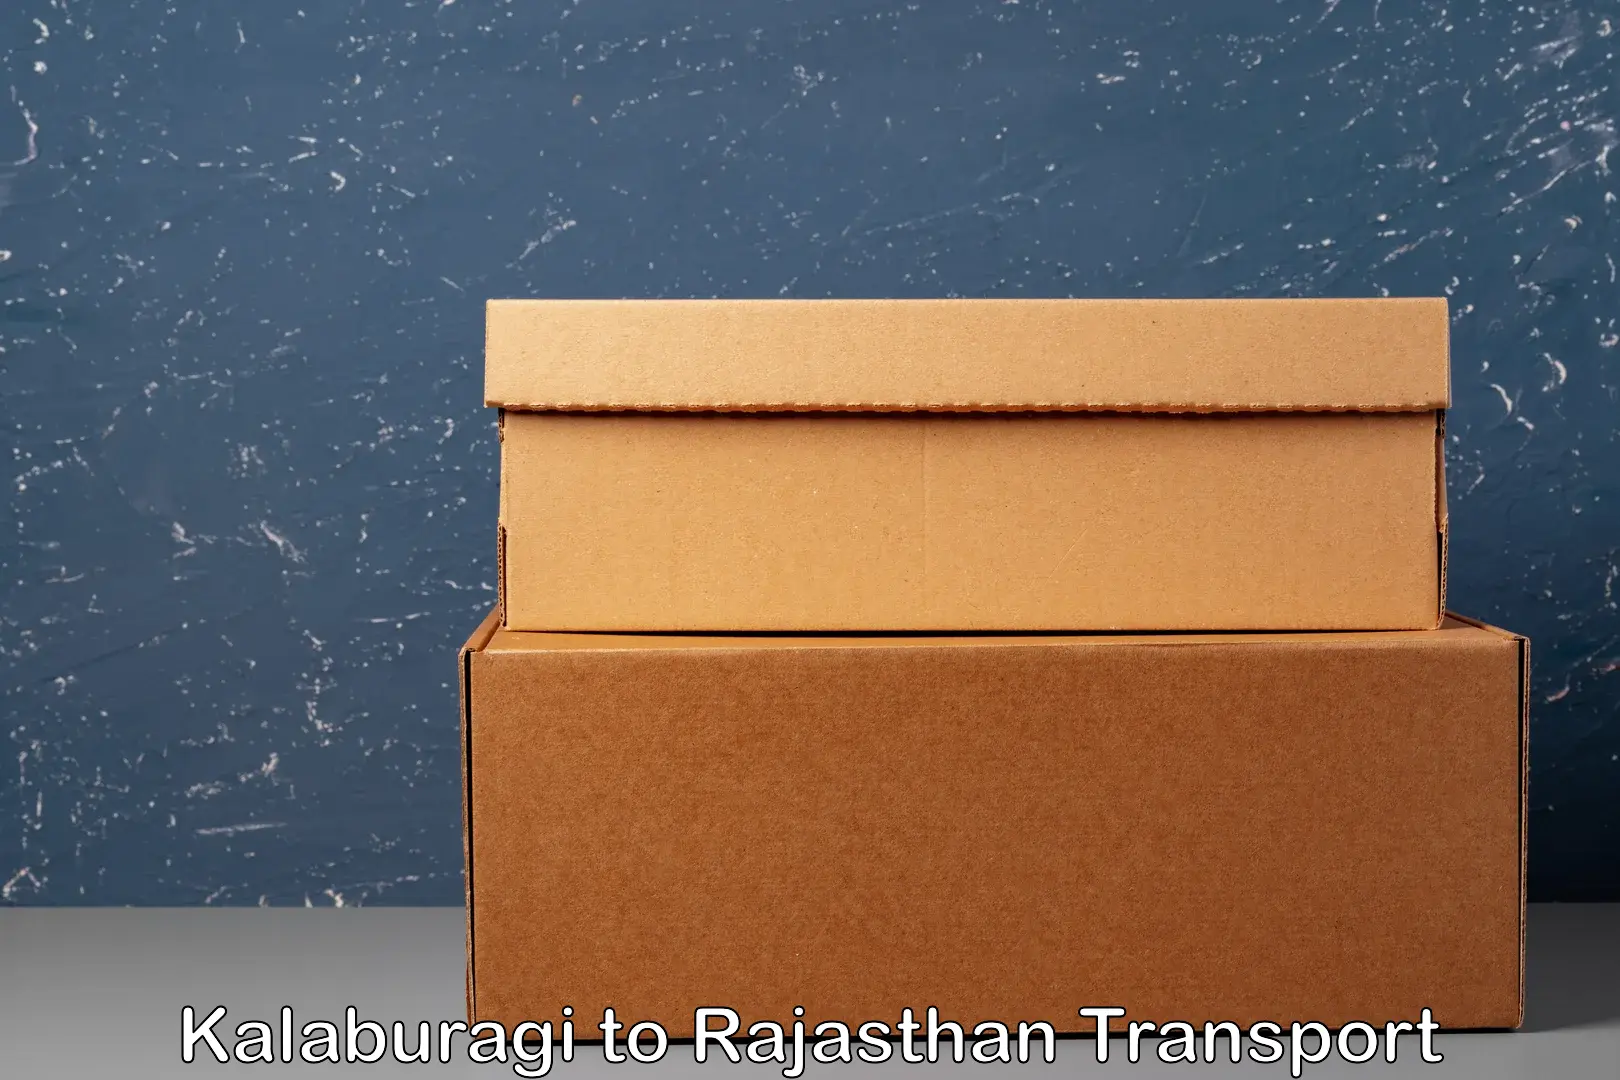 Interstate transport services Kalaburagi to Rajasthan